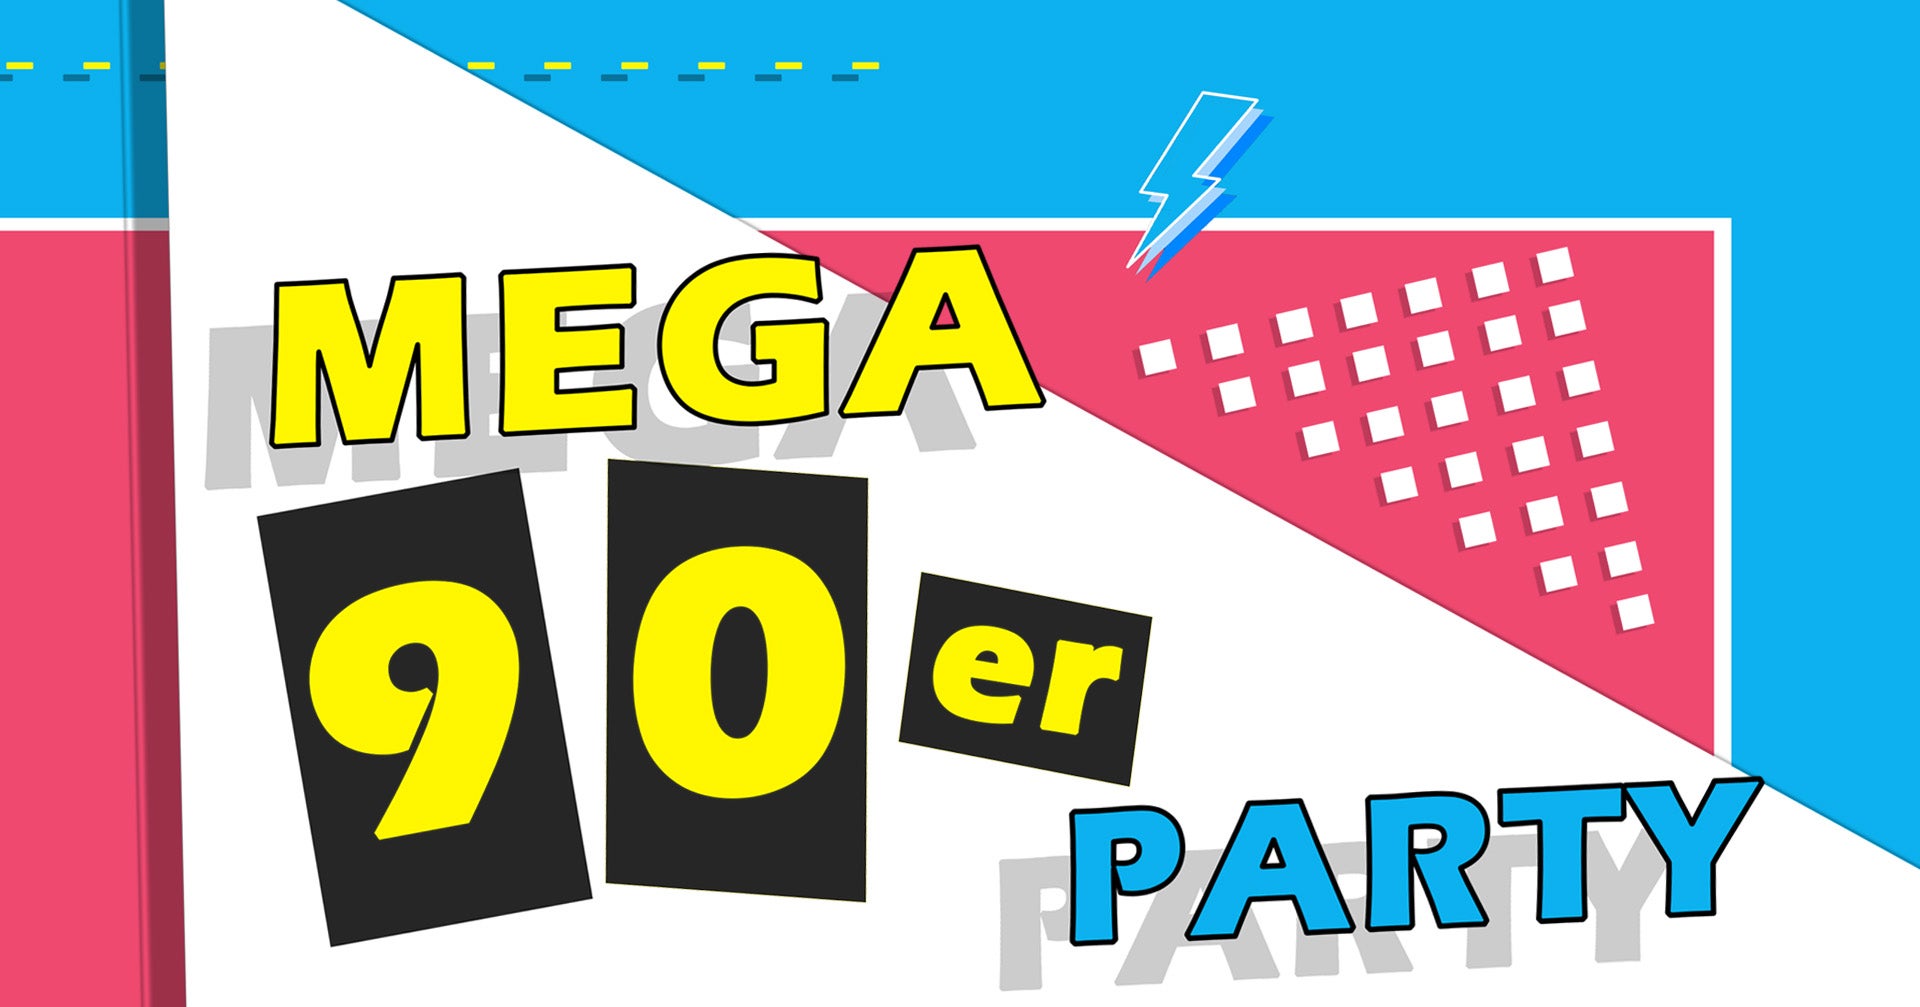 Mega 90er Party!